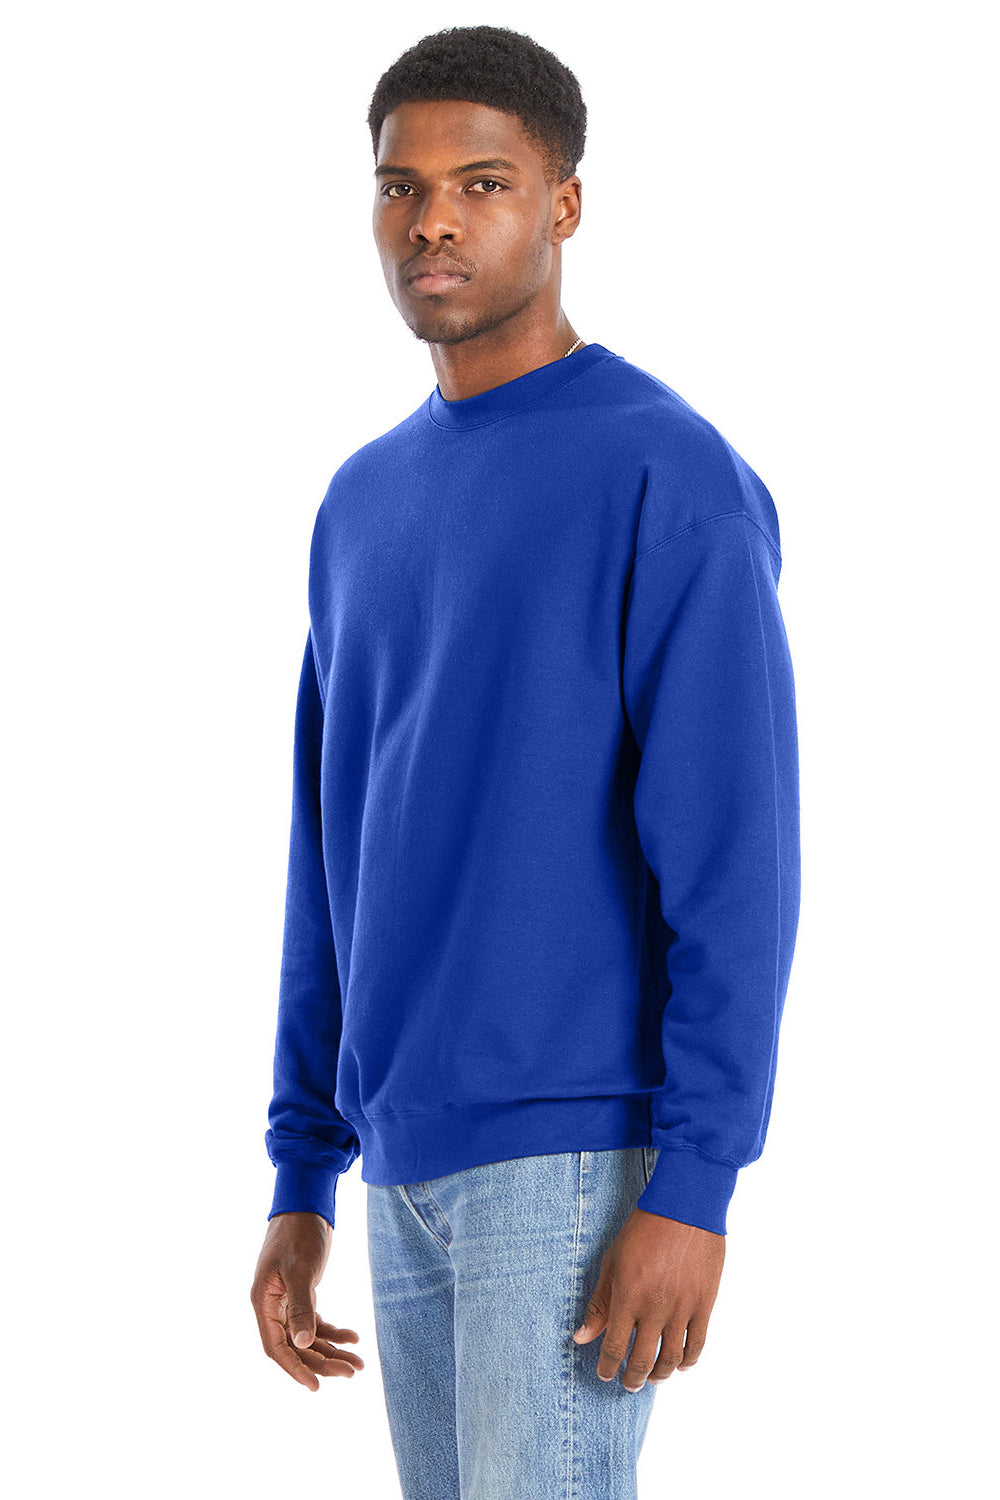 Hanes RS160 Mens Perfect Sweats Crewneck Sweatshirt Deep Royal Blue 3Q